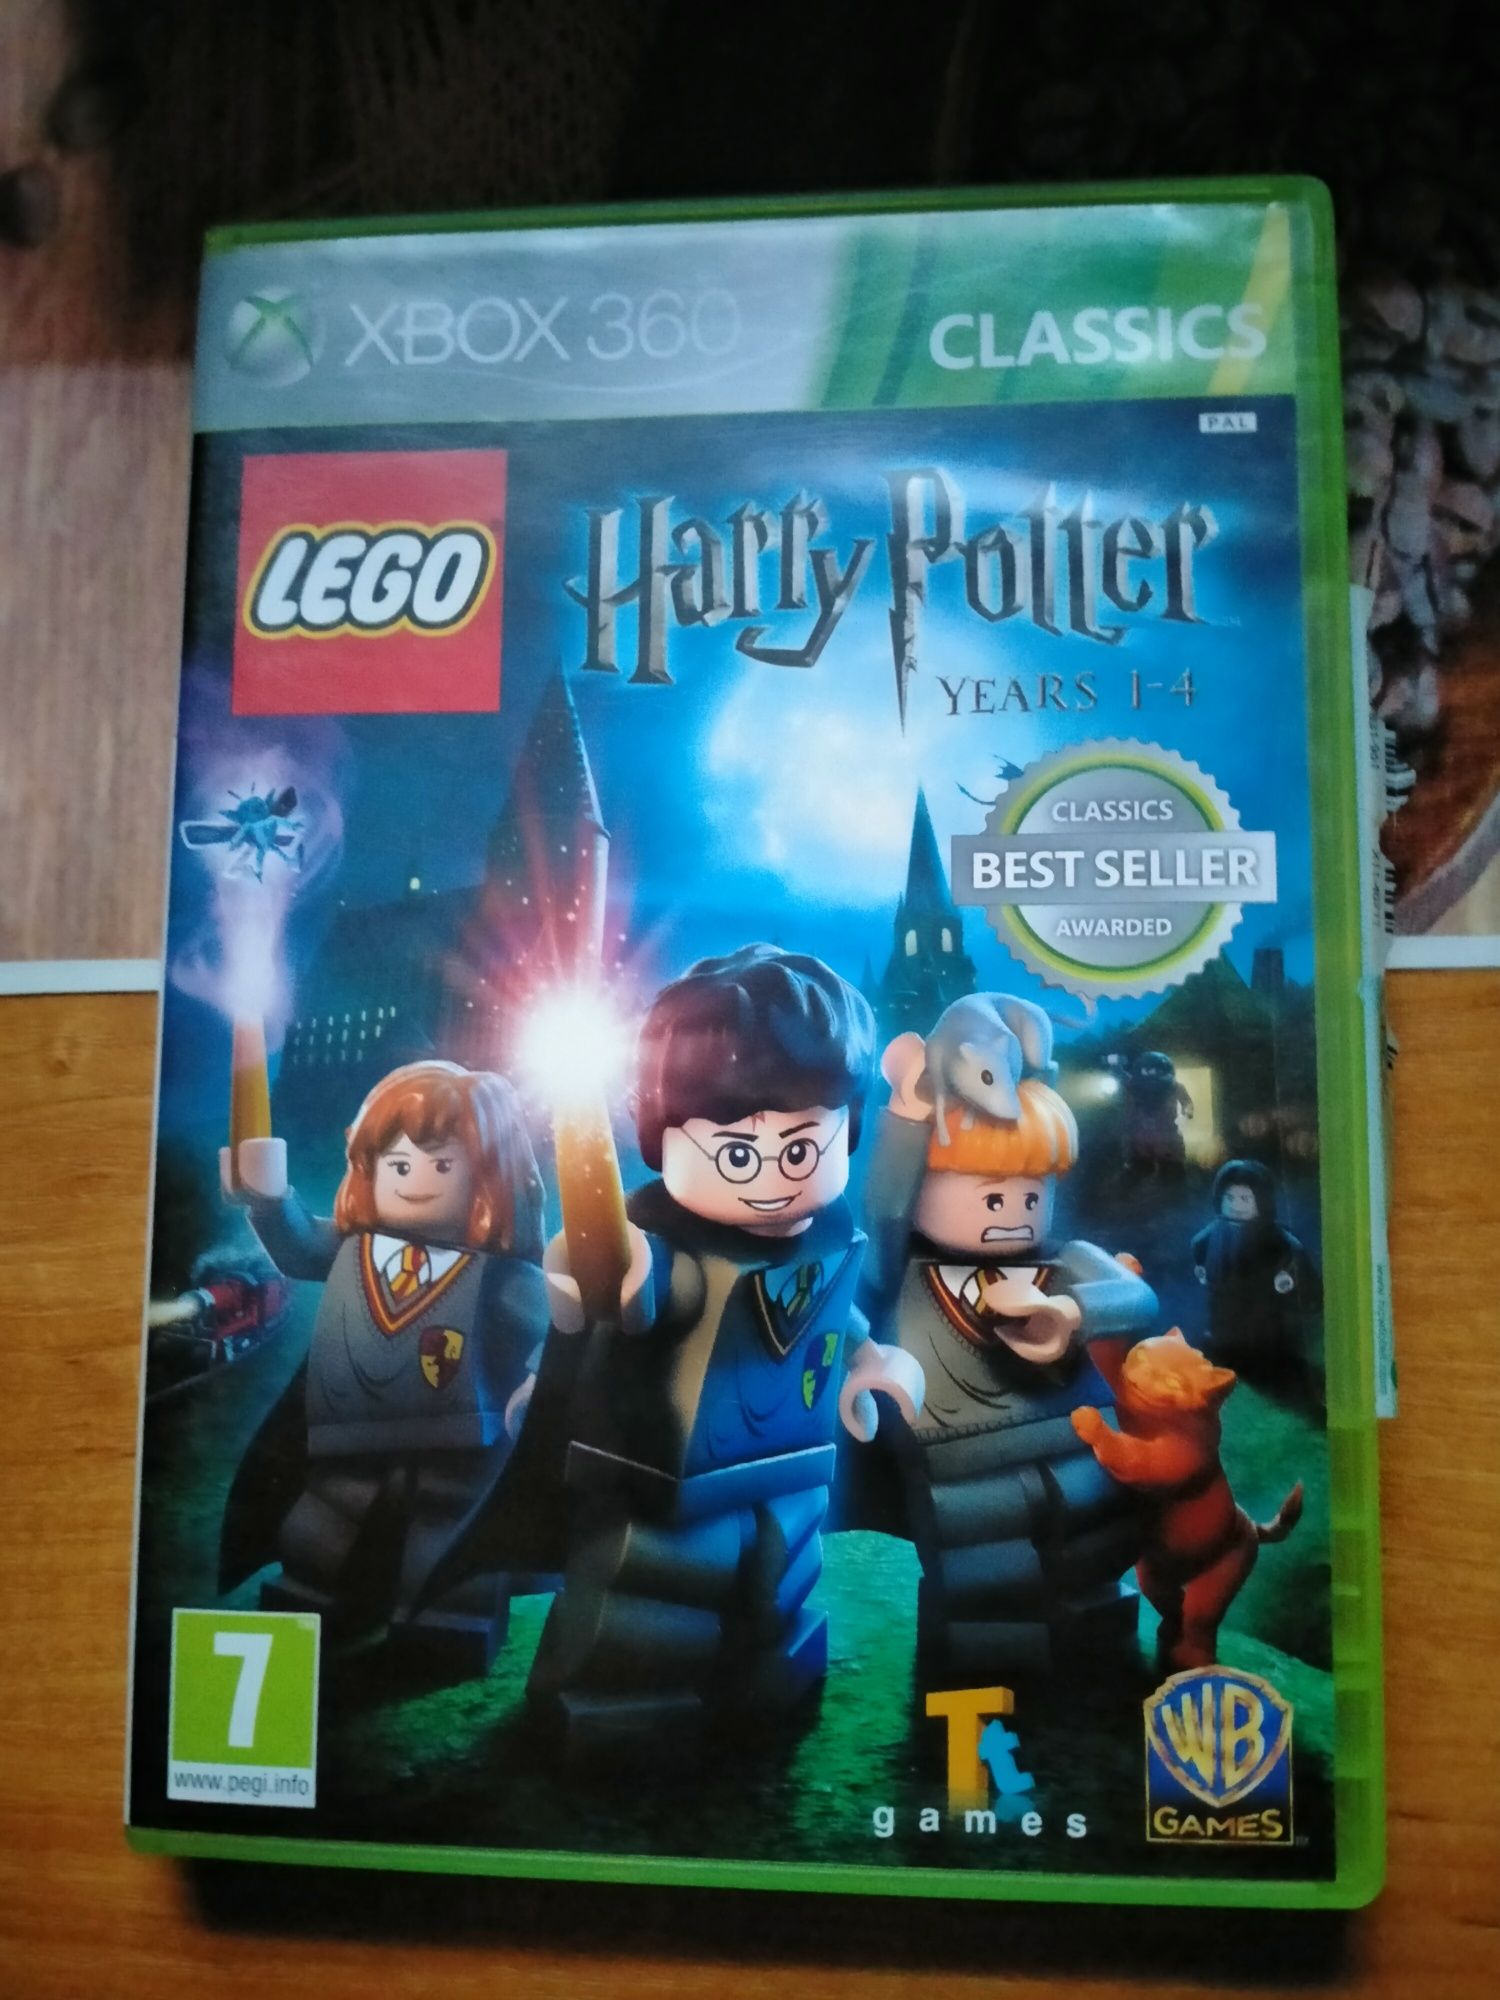 Sprzedam LEGO Harry Potter 1-4 Years Xbox 360